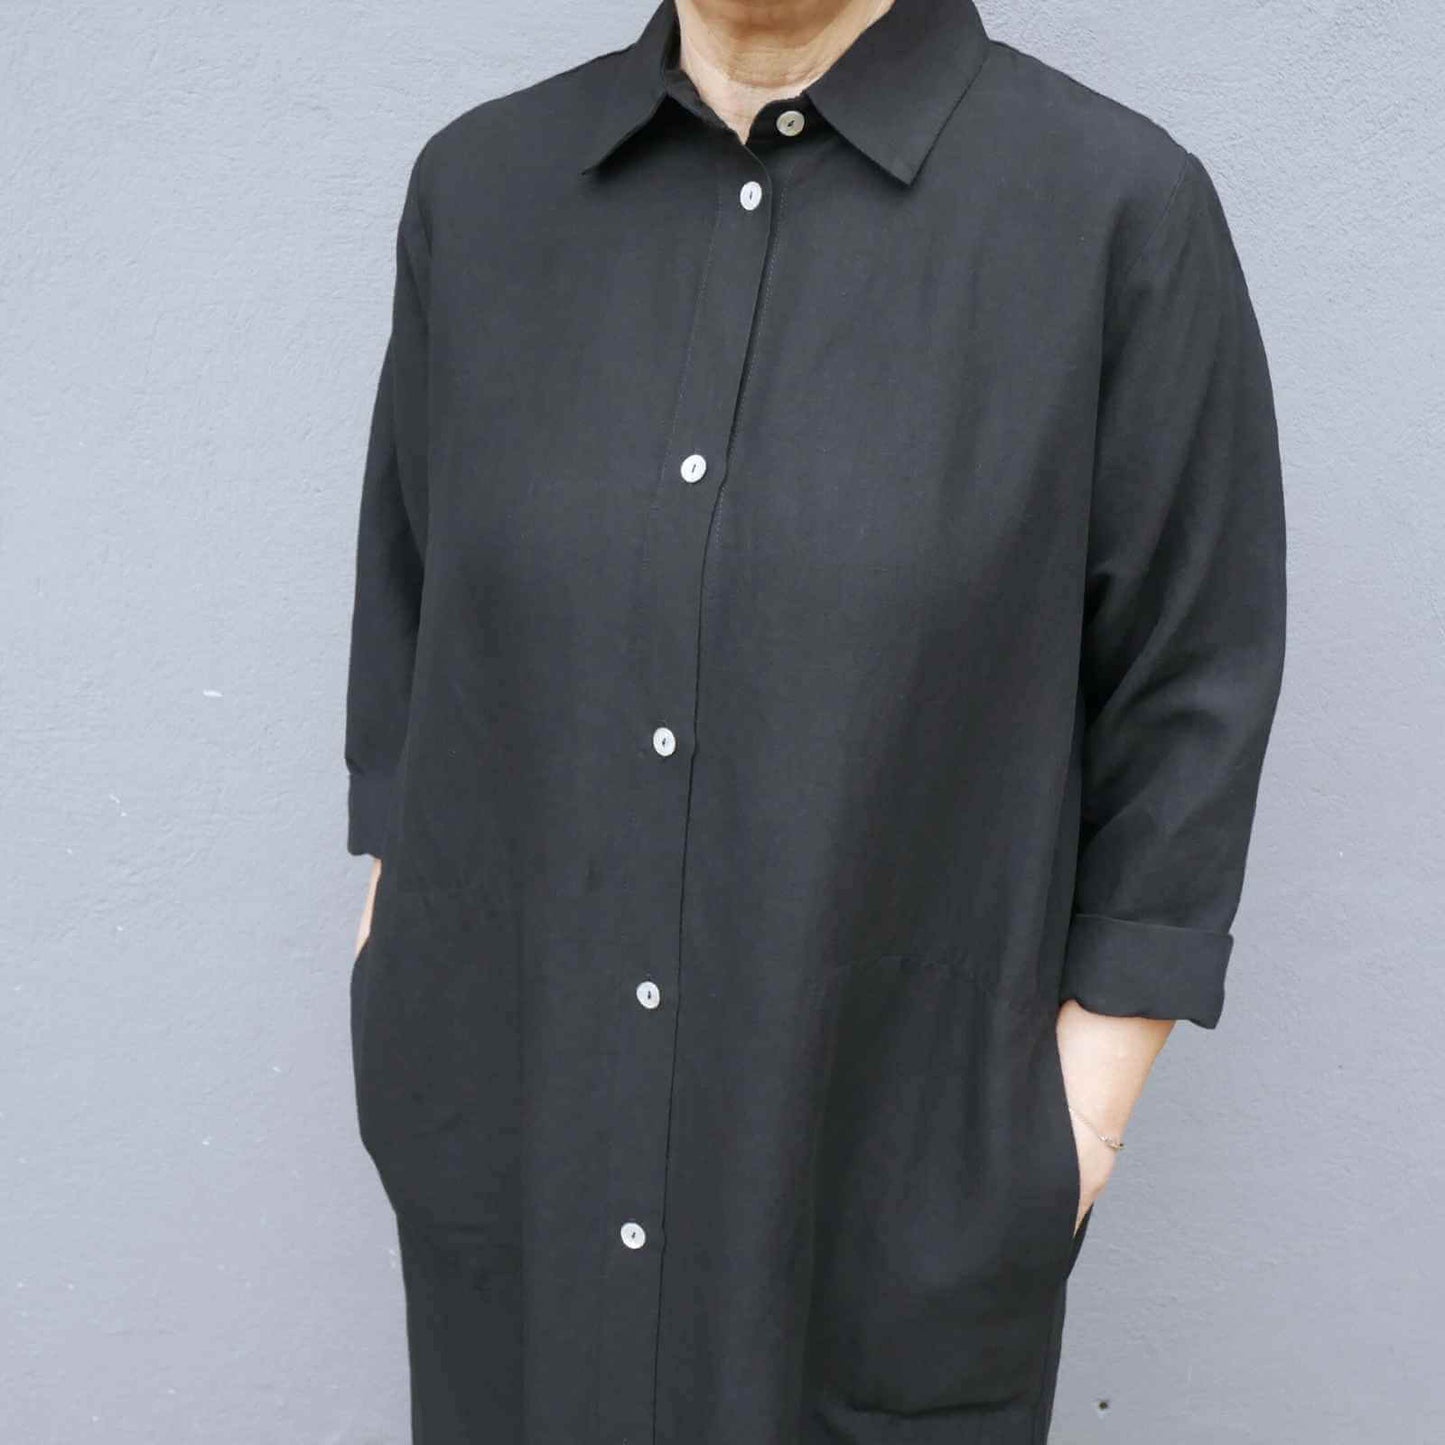 Skjortekrave og 3/4 ærmer på sort lang skjortekjole